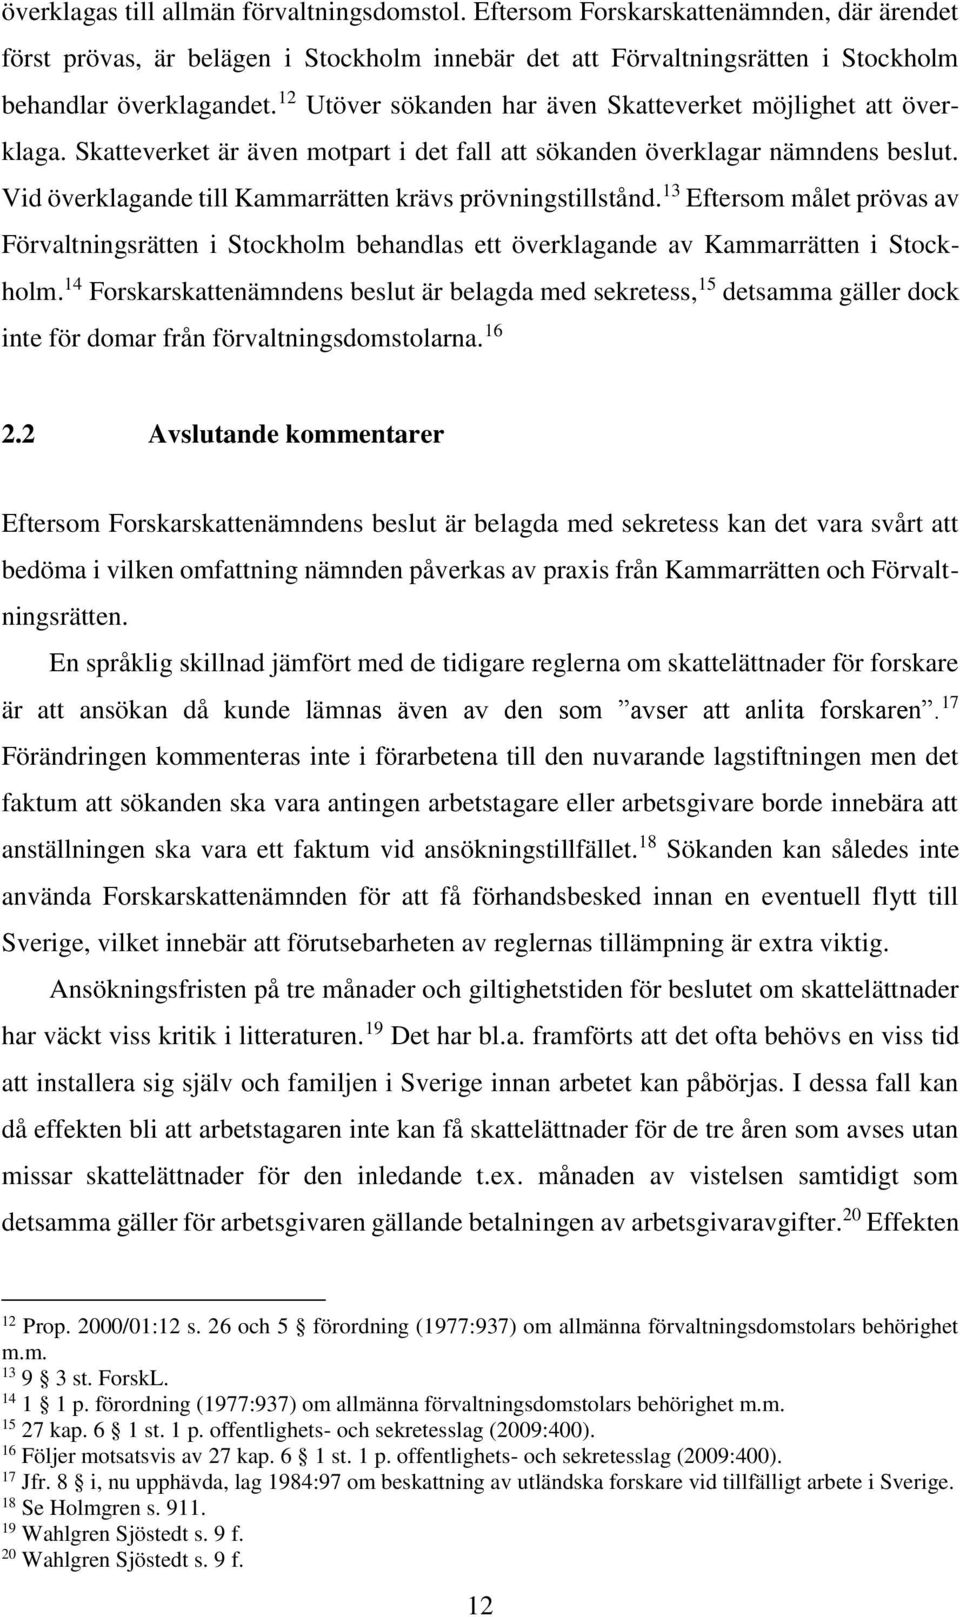 Vid överklagande till Kammarrätten krävs prövningstillstånd. 13 Eftersom målet prövas av Förvaltningsrätten i Stockholm behandlas ett överklagande av Kammarrätten i Stockholm.